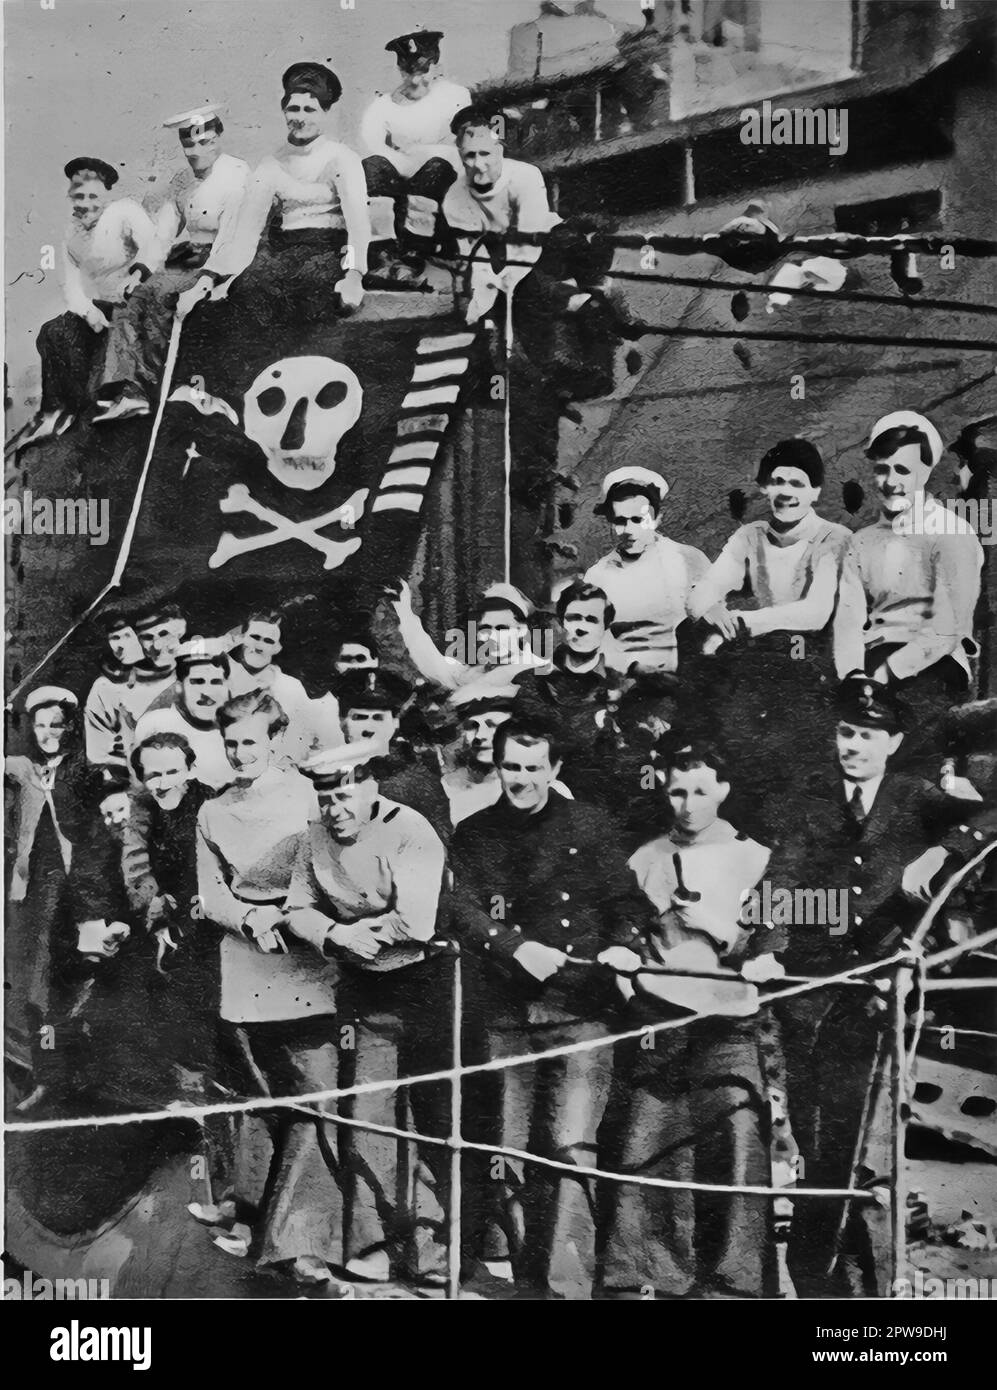 Die Crew von HMS Upright, einem britischen U-Boot, feiert ihre Rückkehr im Jahr 1942 von Patrouillen im Mittelmeer während des 11. Weltkriegs. Zu ihren Errungenschaften gehörte der erste bekannte Untergang eines schwimmenden Docks. Stockfoto